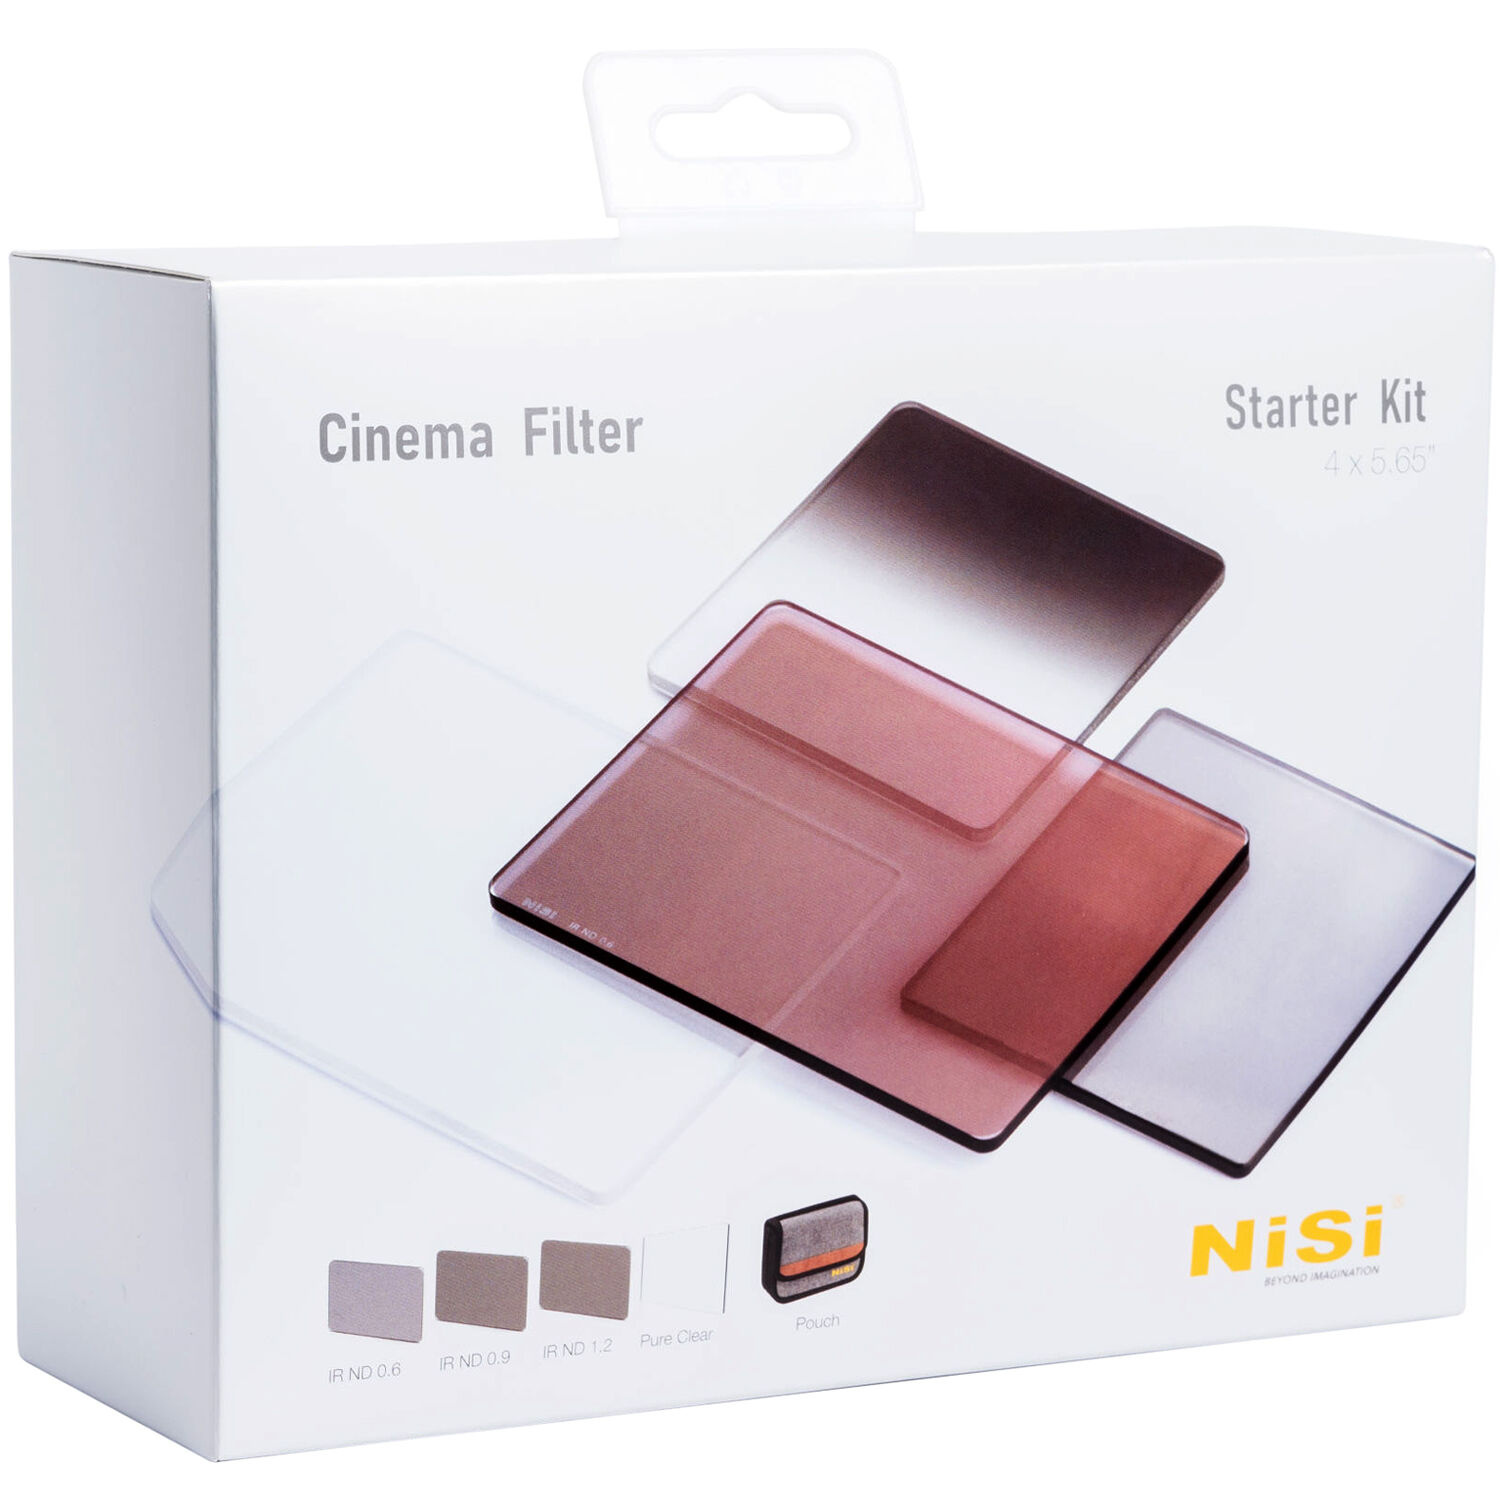 NiSi Cinema 4 x 5.65'' Starter Kit